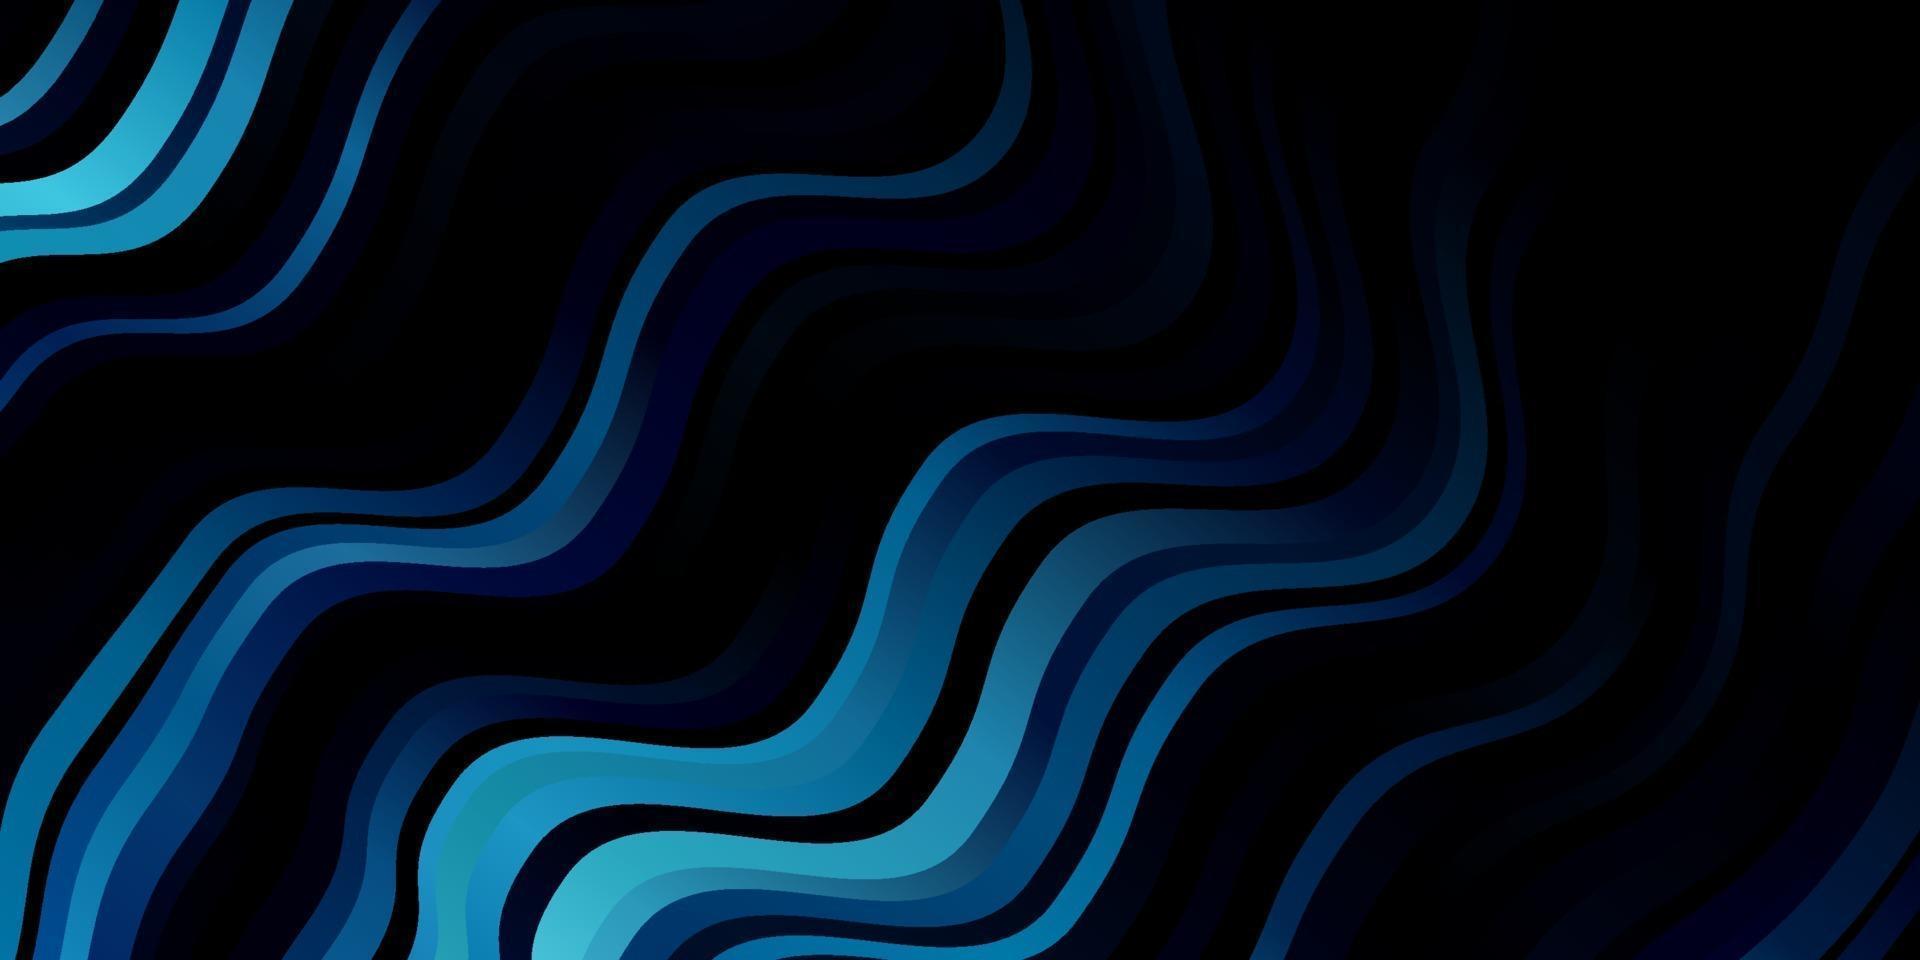 modelo de vetor azul escuro com linhas curvas.